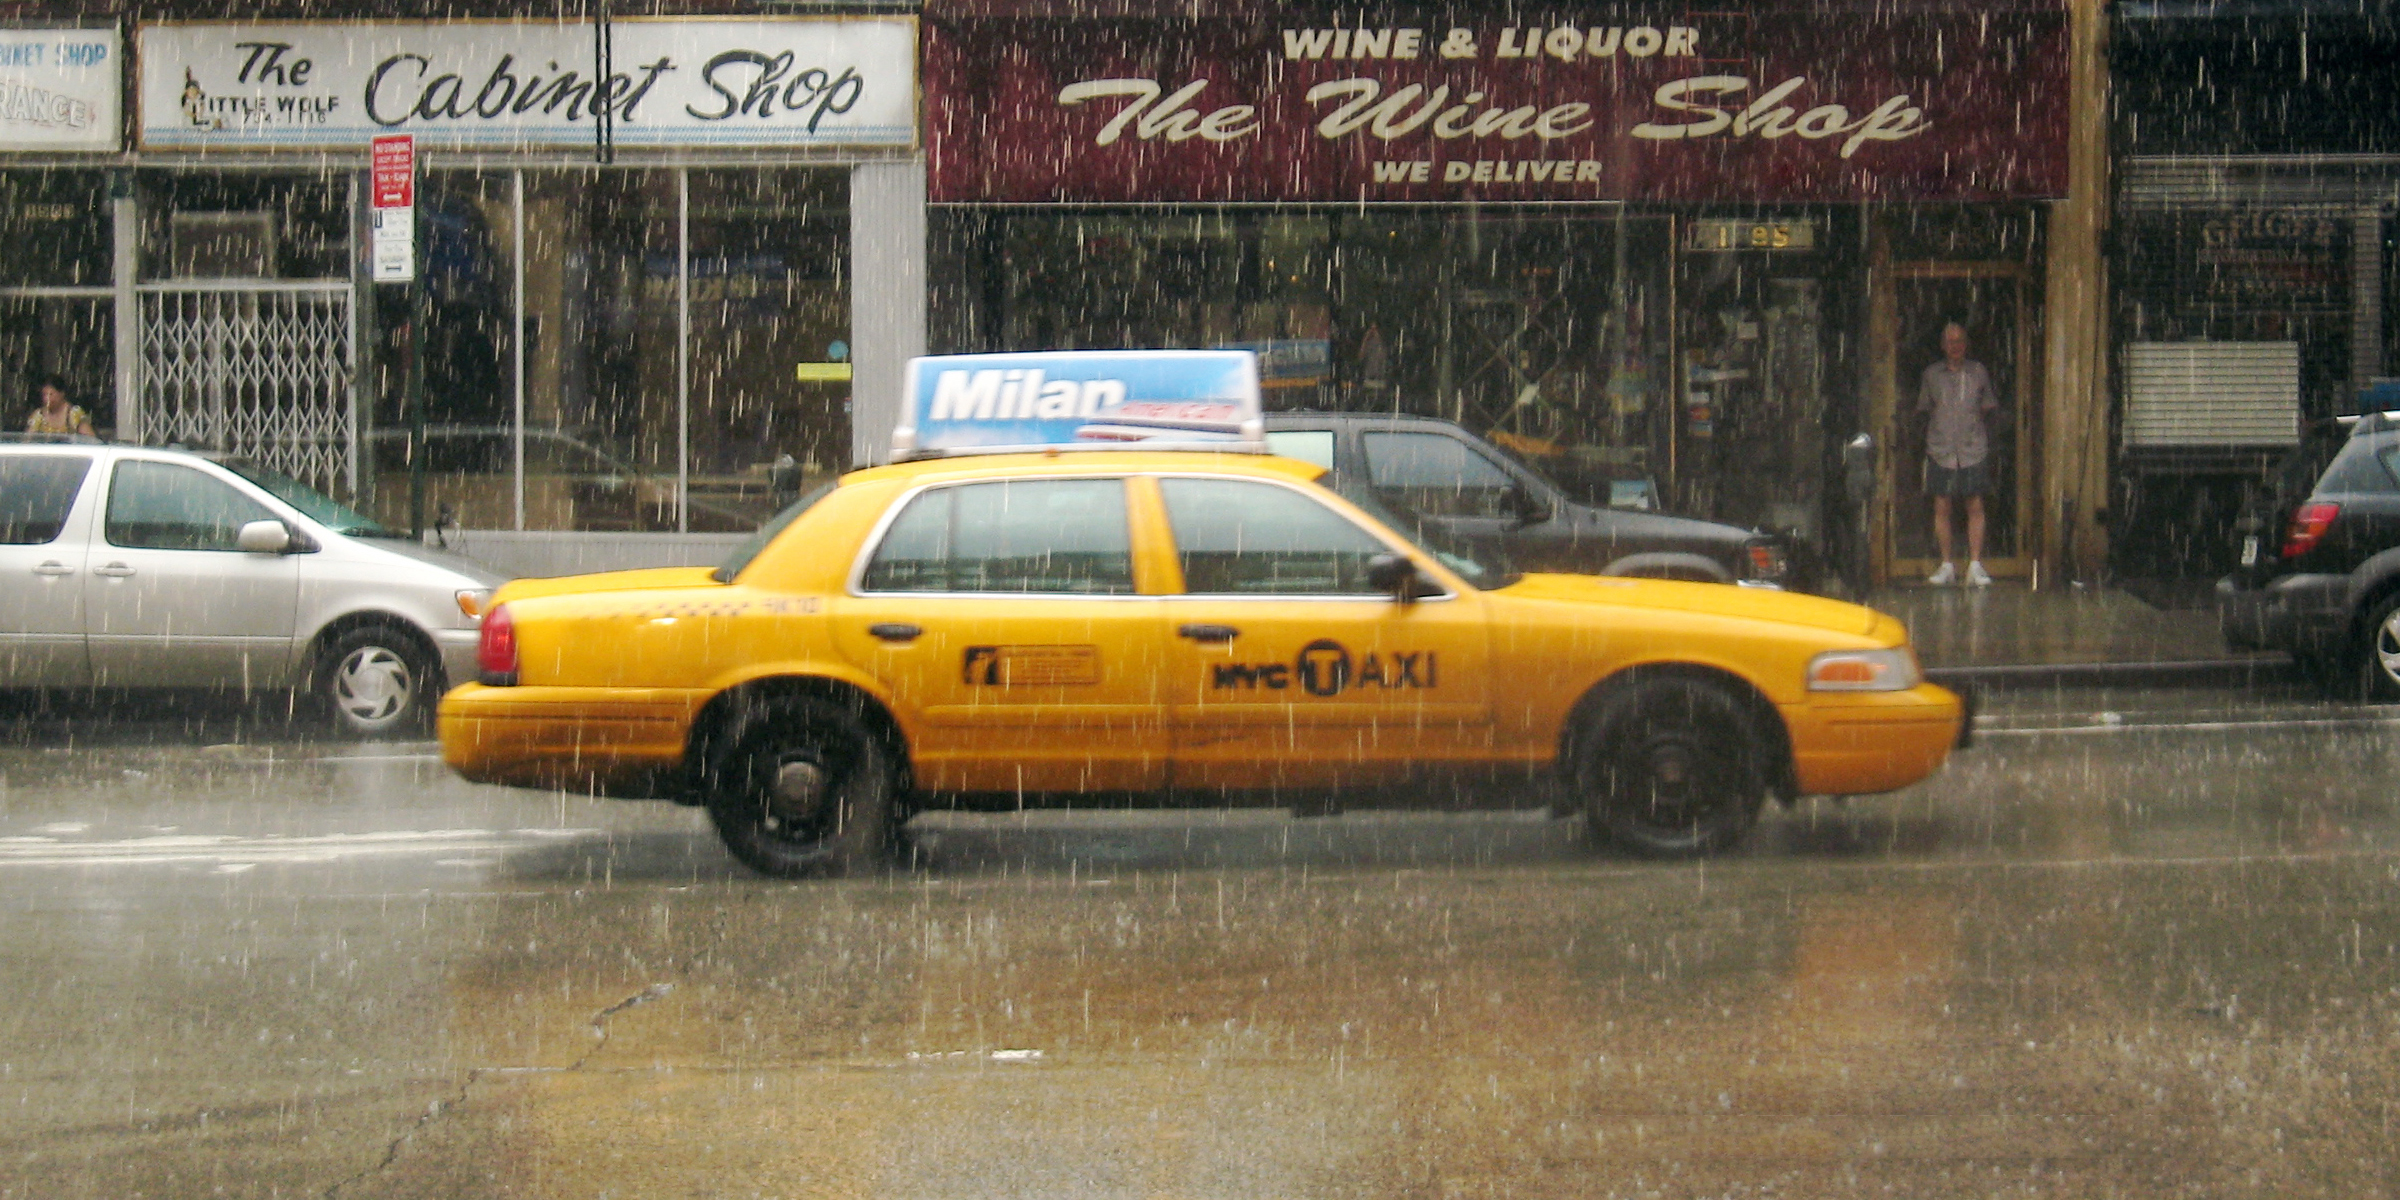 Taxi amarillo circulando por una calle de la ciudad durante una fuerte lluvia | Fuente: Flickr.com/wka (CC BY-SA 2.0)